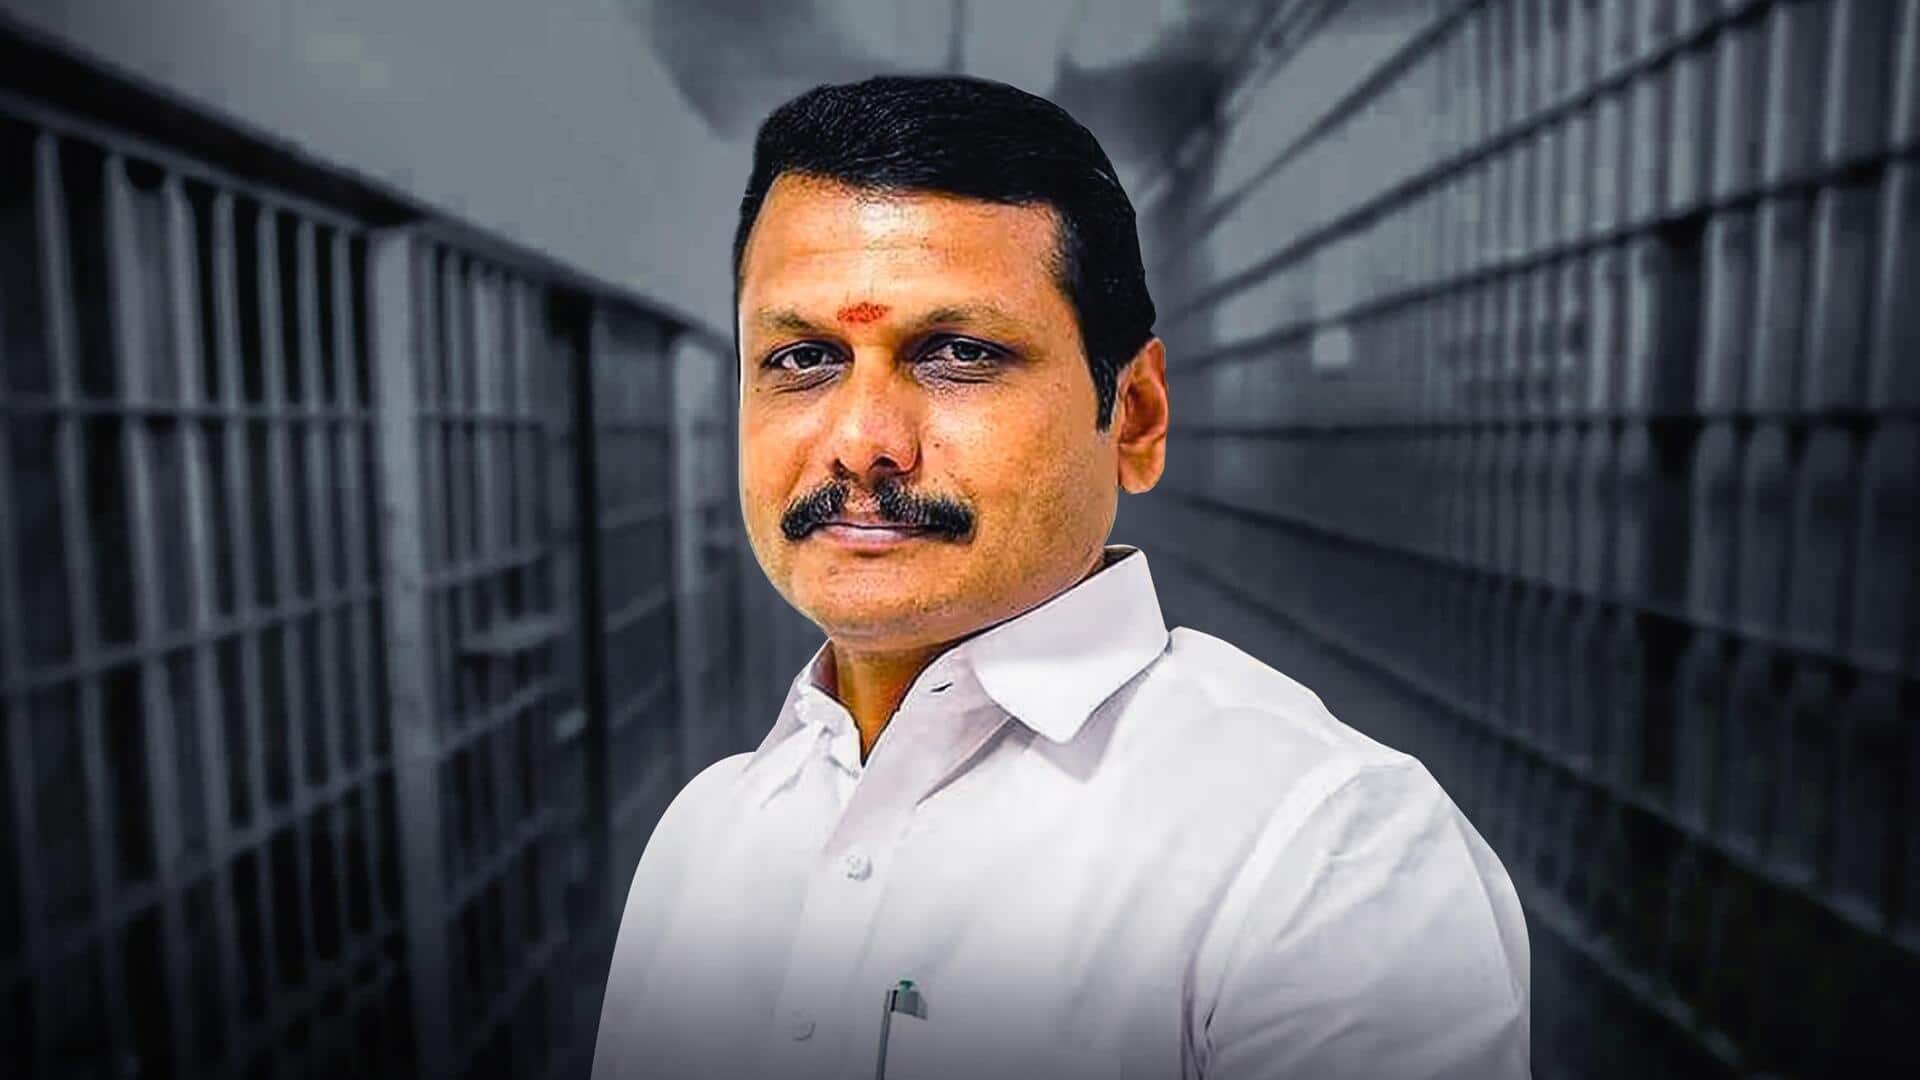 ED ने तमिलनाडु के विद्युत मंत्री को किया गिरफ्तार, DMK ने लगाया प्रताड़ना का आरोप